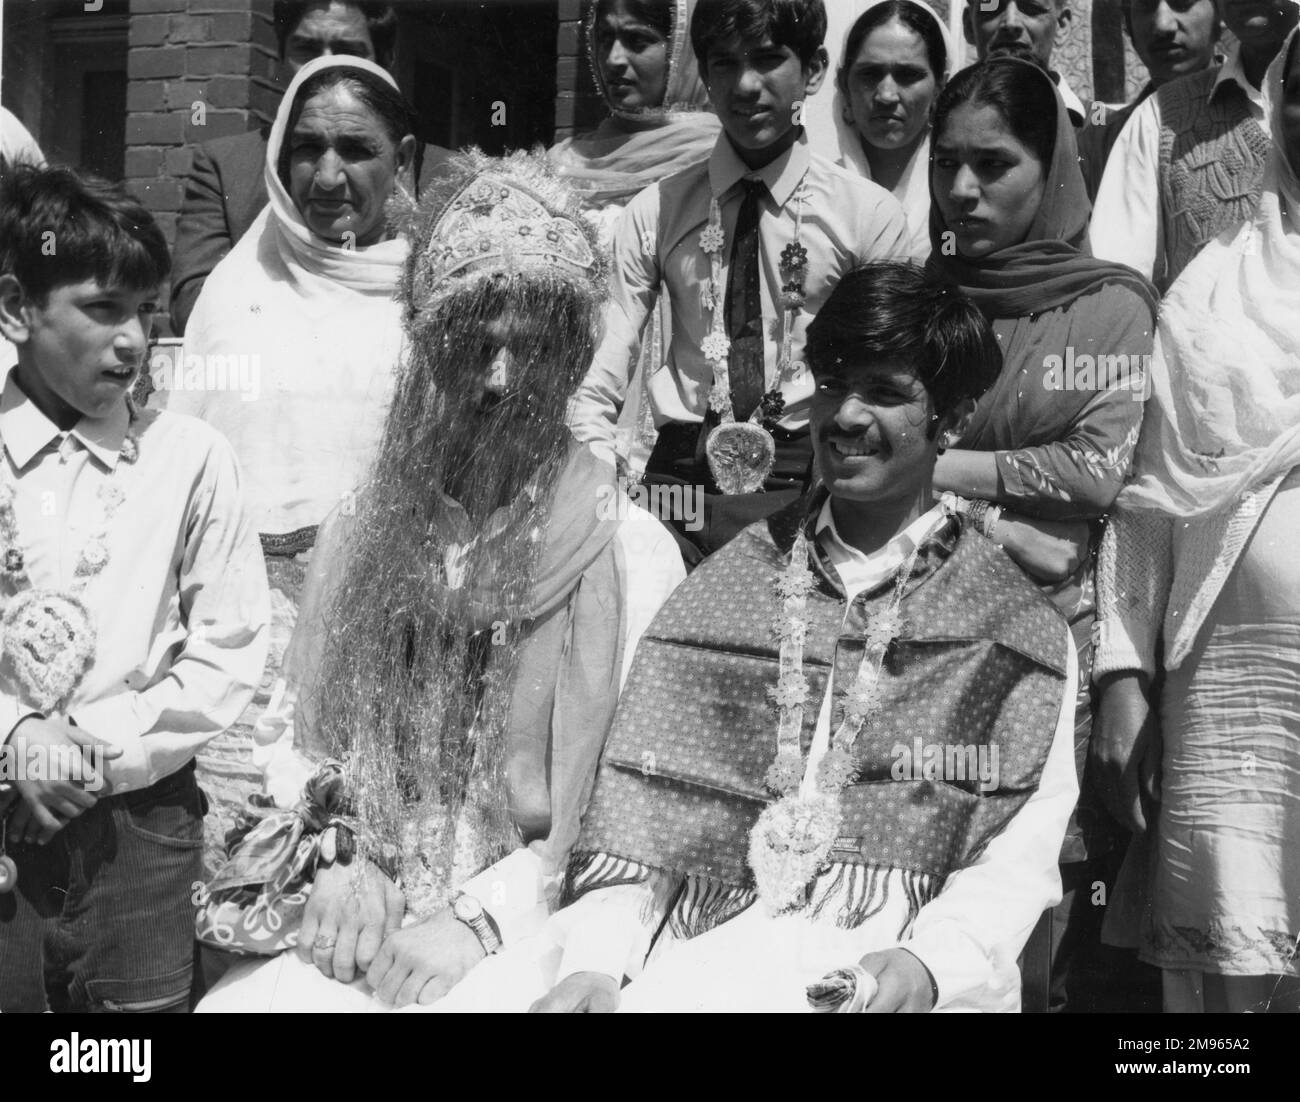 Scène à un mariage musulman (pakistanais), probablement en Grande-Bretagne, avec le marié portant une robe de tête, entouré de sa famille. Banque D'Images